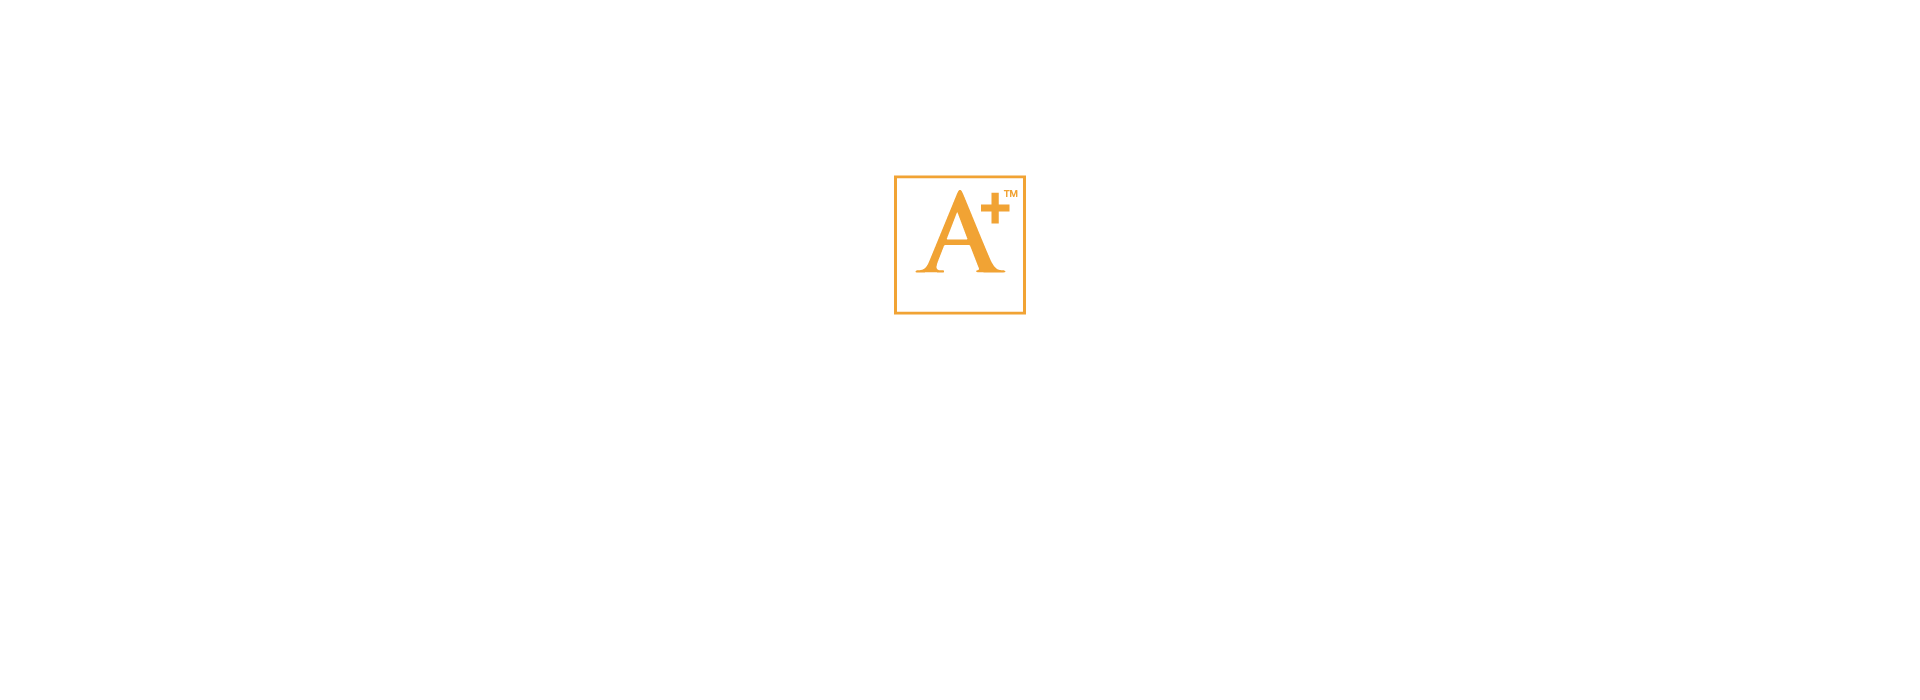 2019 Awards